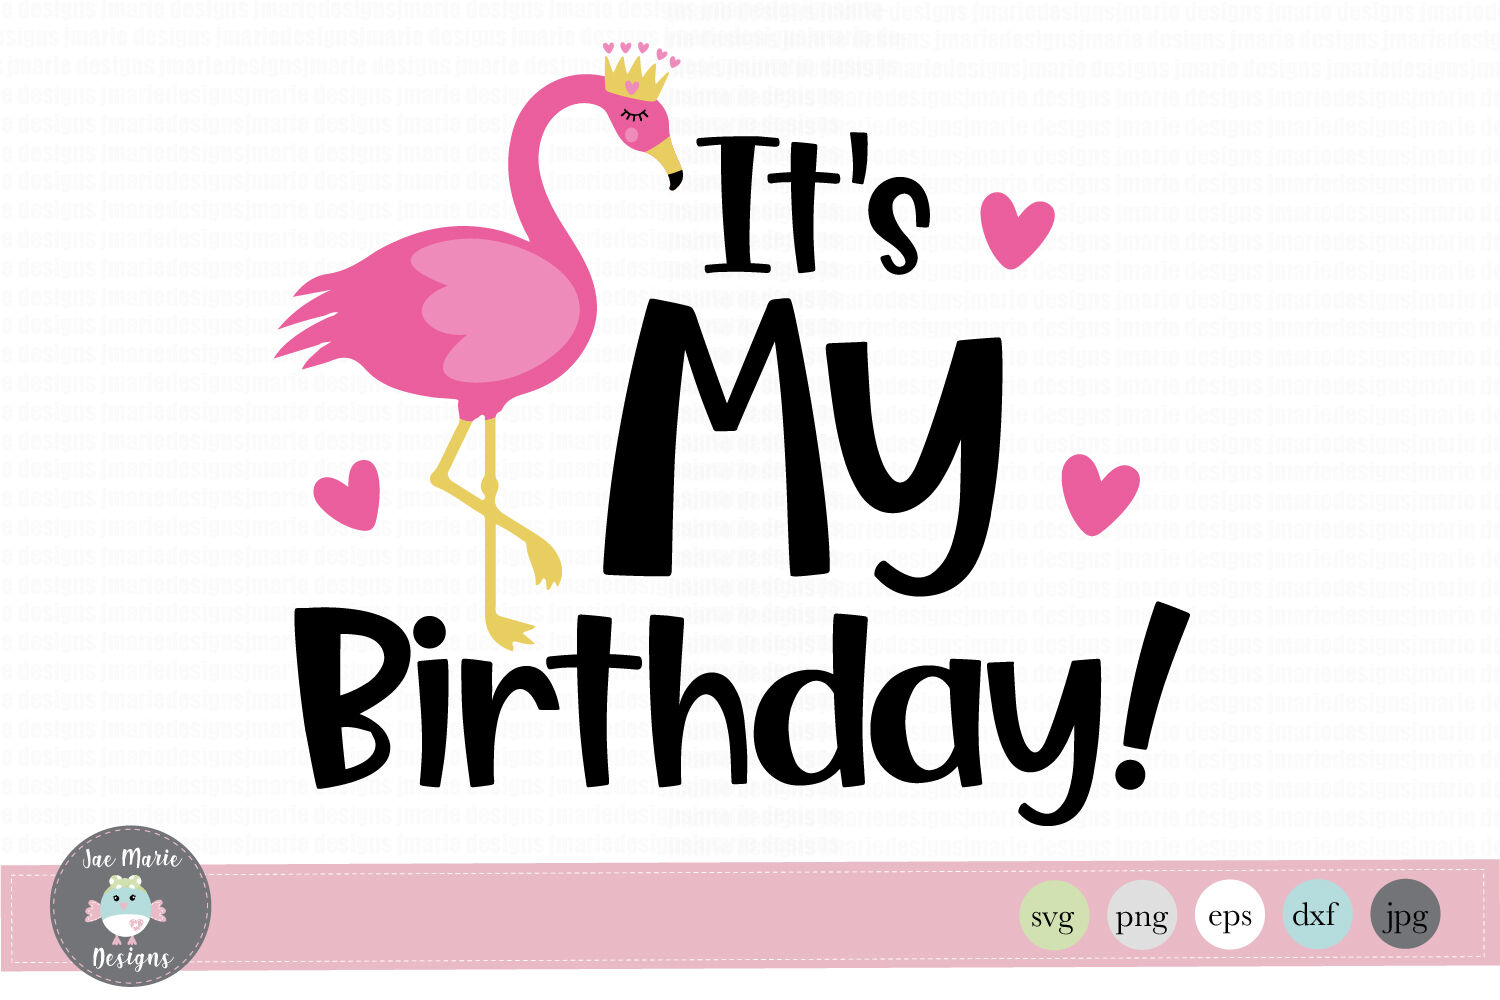 ori 3600013 psm1i6bt1h56hoxgla8k44e4o07xlgyjx6hp6fc3 flamingo birthday svg girls birthday svg